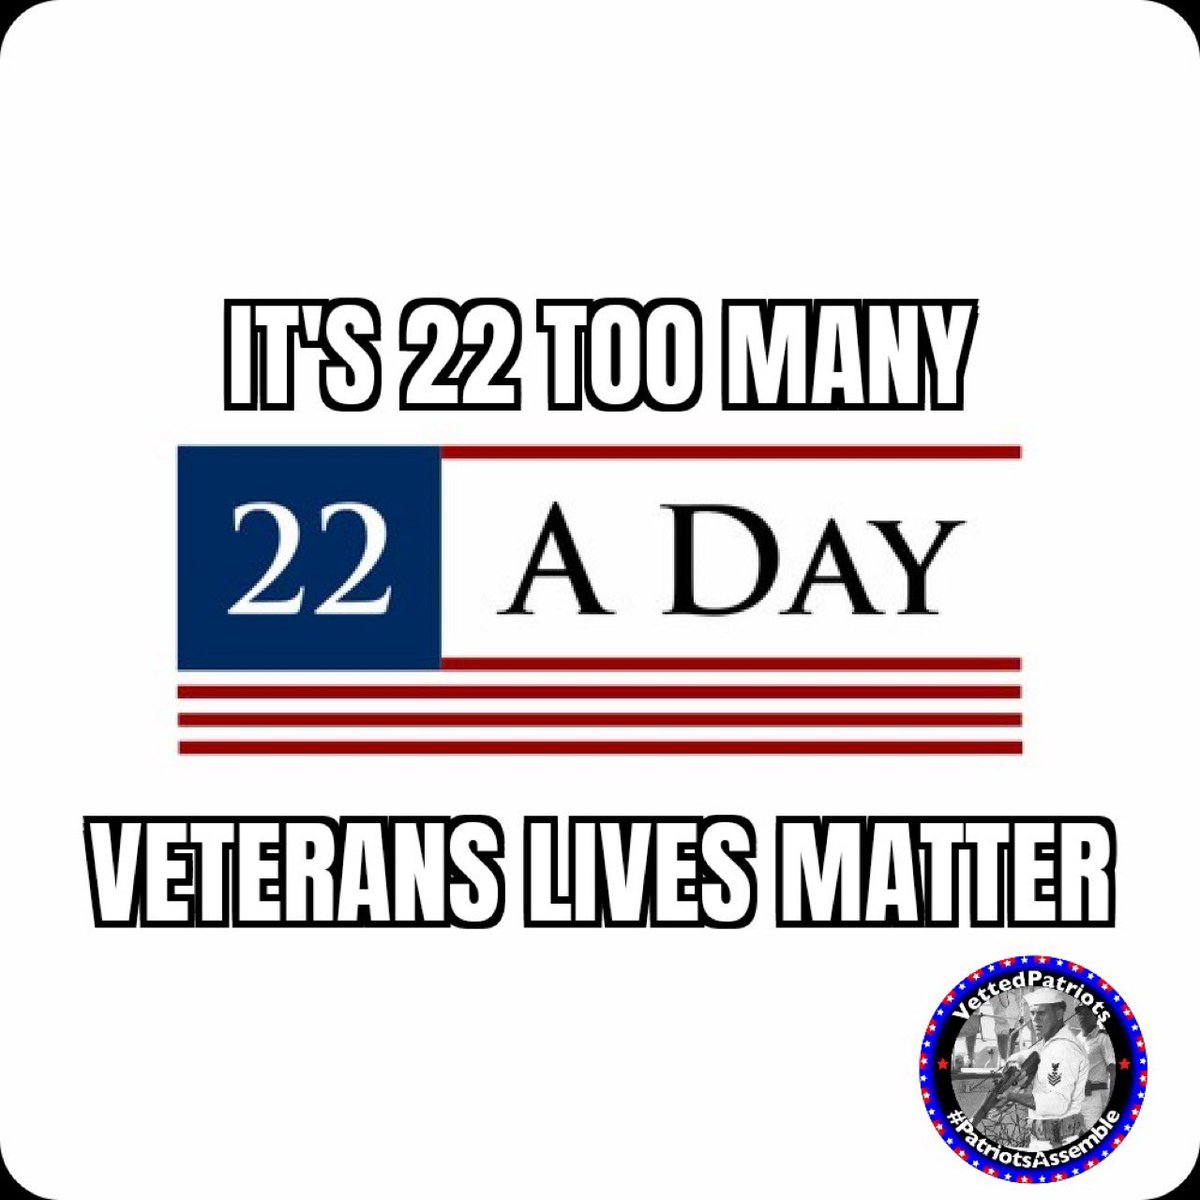 #HappyNewYearMonday #BuddyChecksMatterMoreIn2024 #BuddyCheckers do #Buddy✅✅with #Veterans #turn22to0 
🇺🇸@mil_vet17 @acls9_9 @stvwht @mmoyak @vmmtn⭐️
🇺🇸@cesheldon1 @DJC2814 @USAVet_5 @DPatrioticvet⭐️
🇺🇸@CombatDoc4 @FawnMacMT @SRecupero1776⭐️
🇺🇸@FinishTheRace_ @BillThornley2⭐️